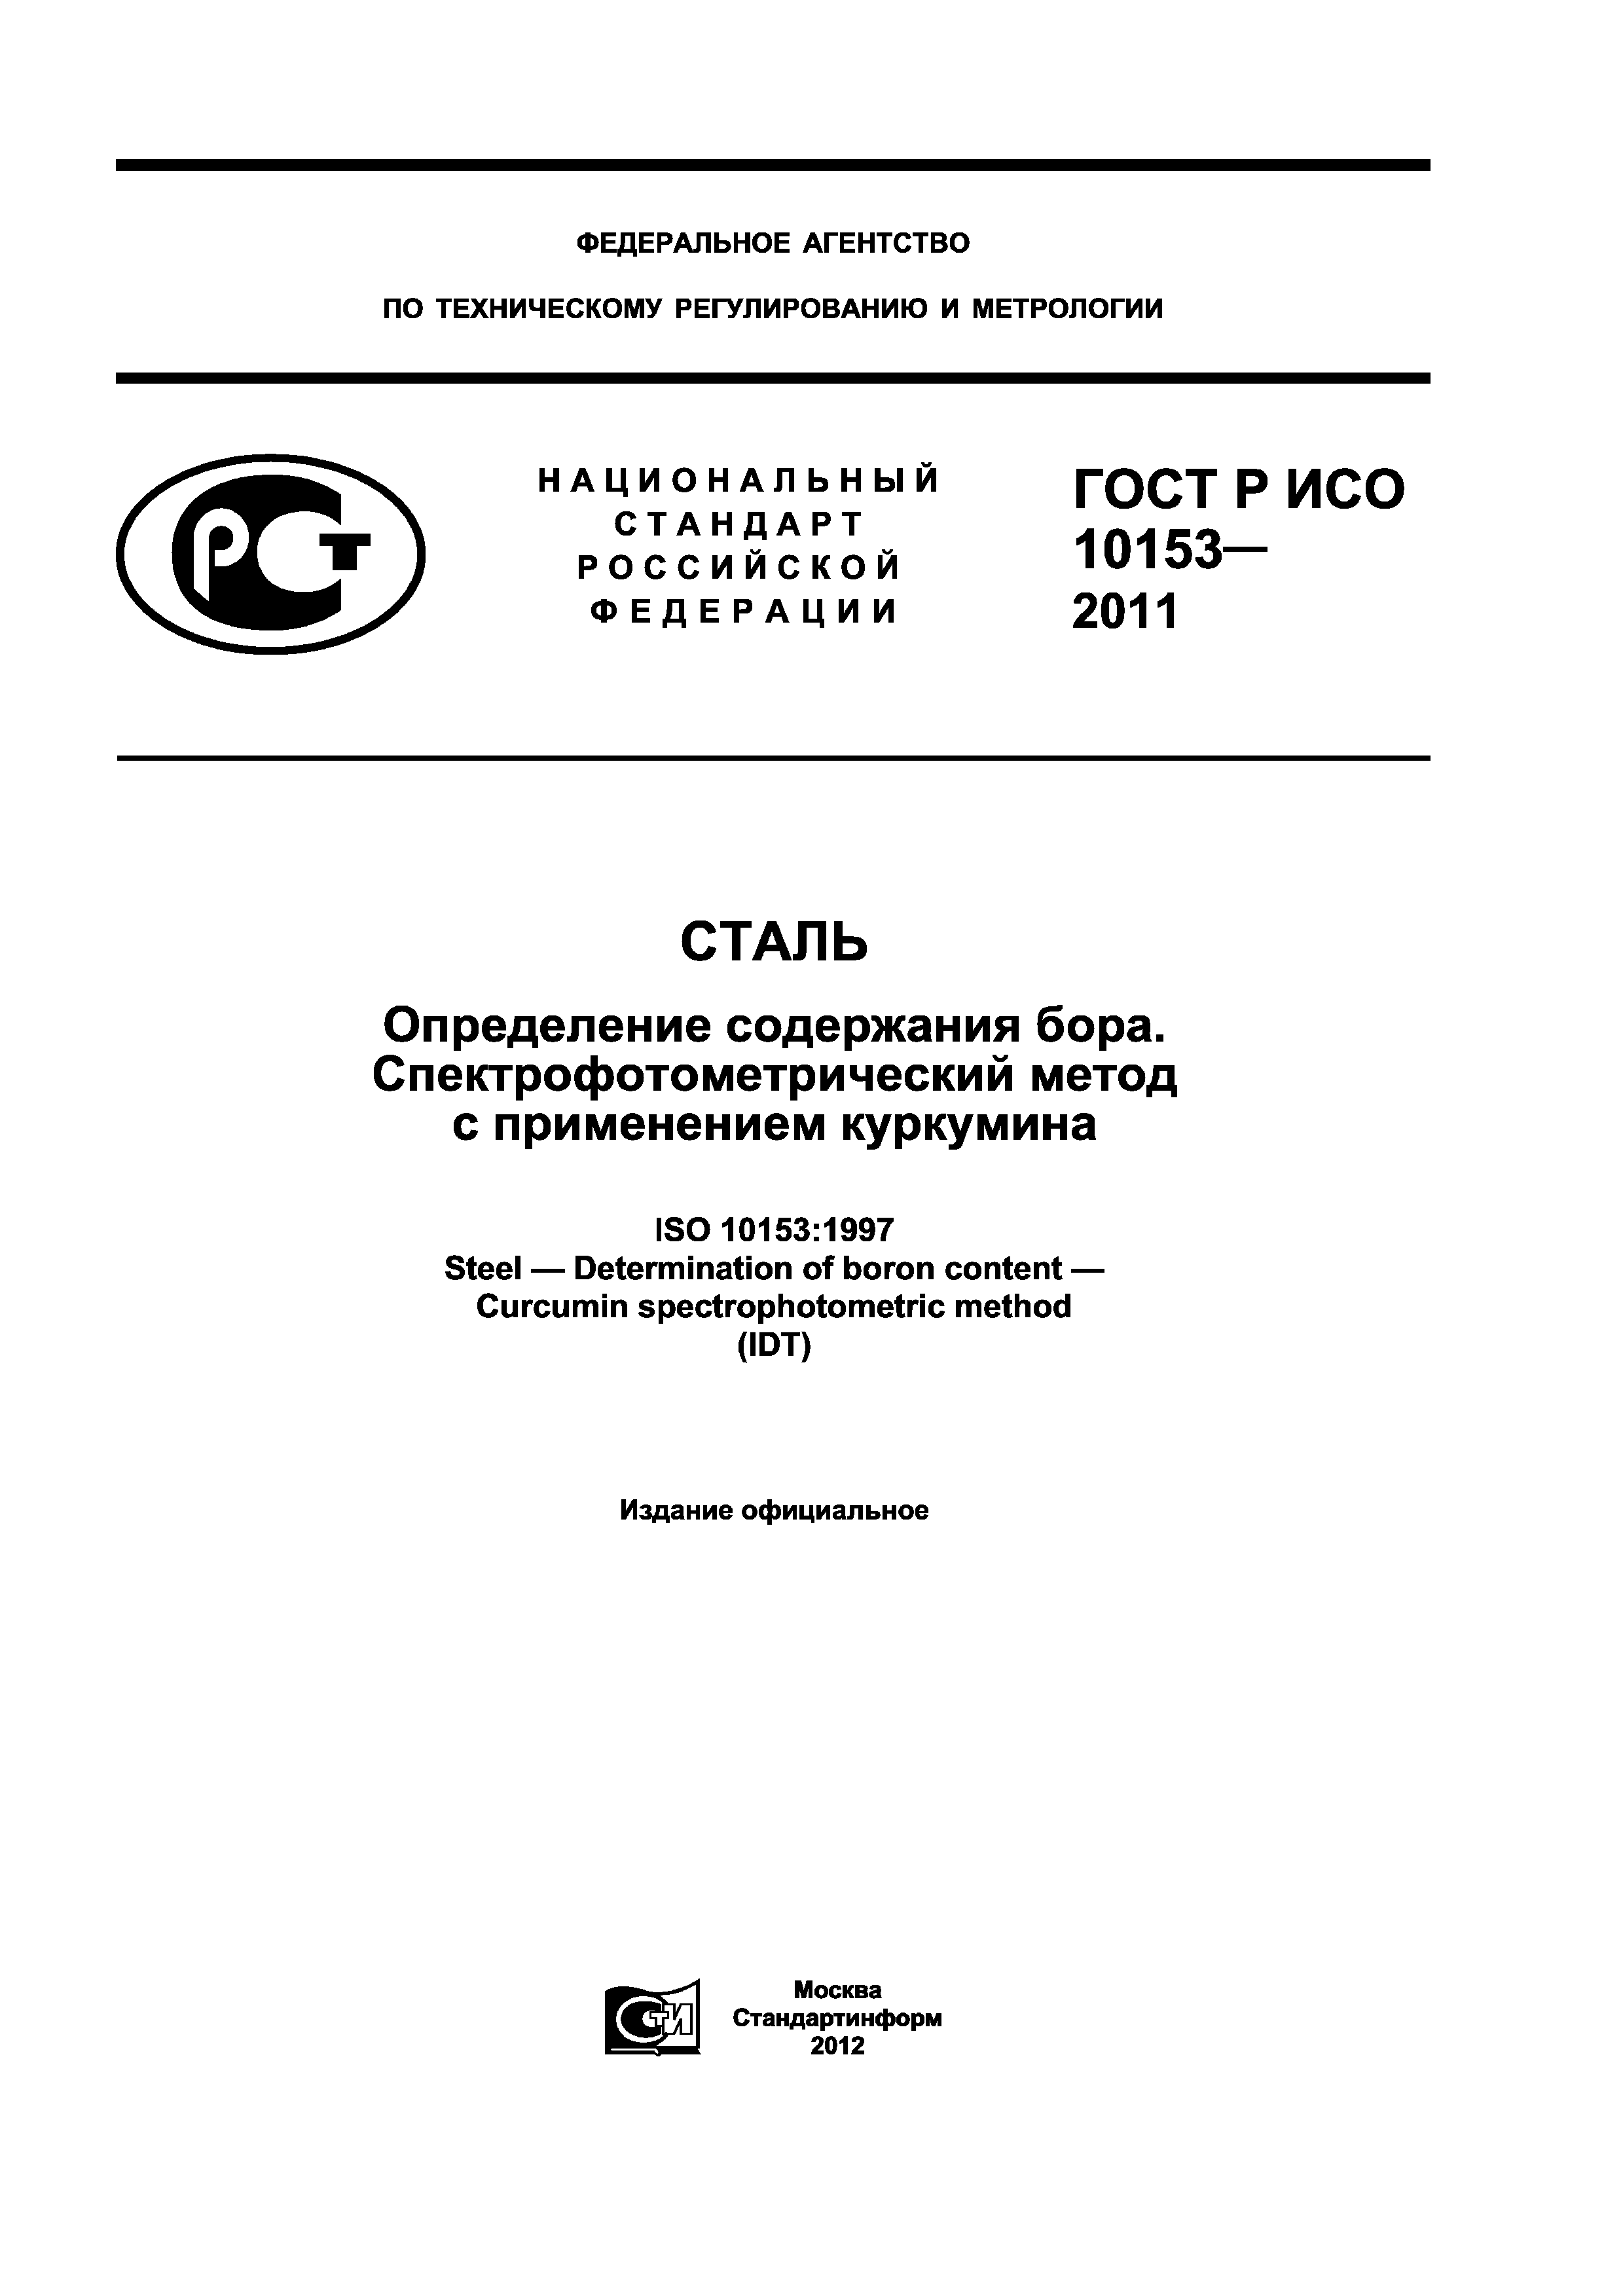 ГОСТ Р ИСО 10153-2011